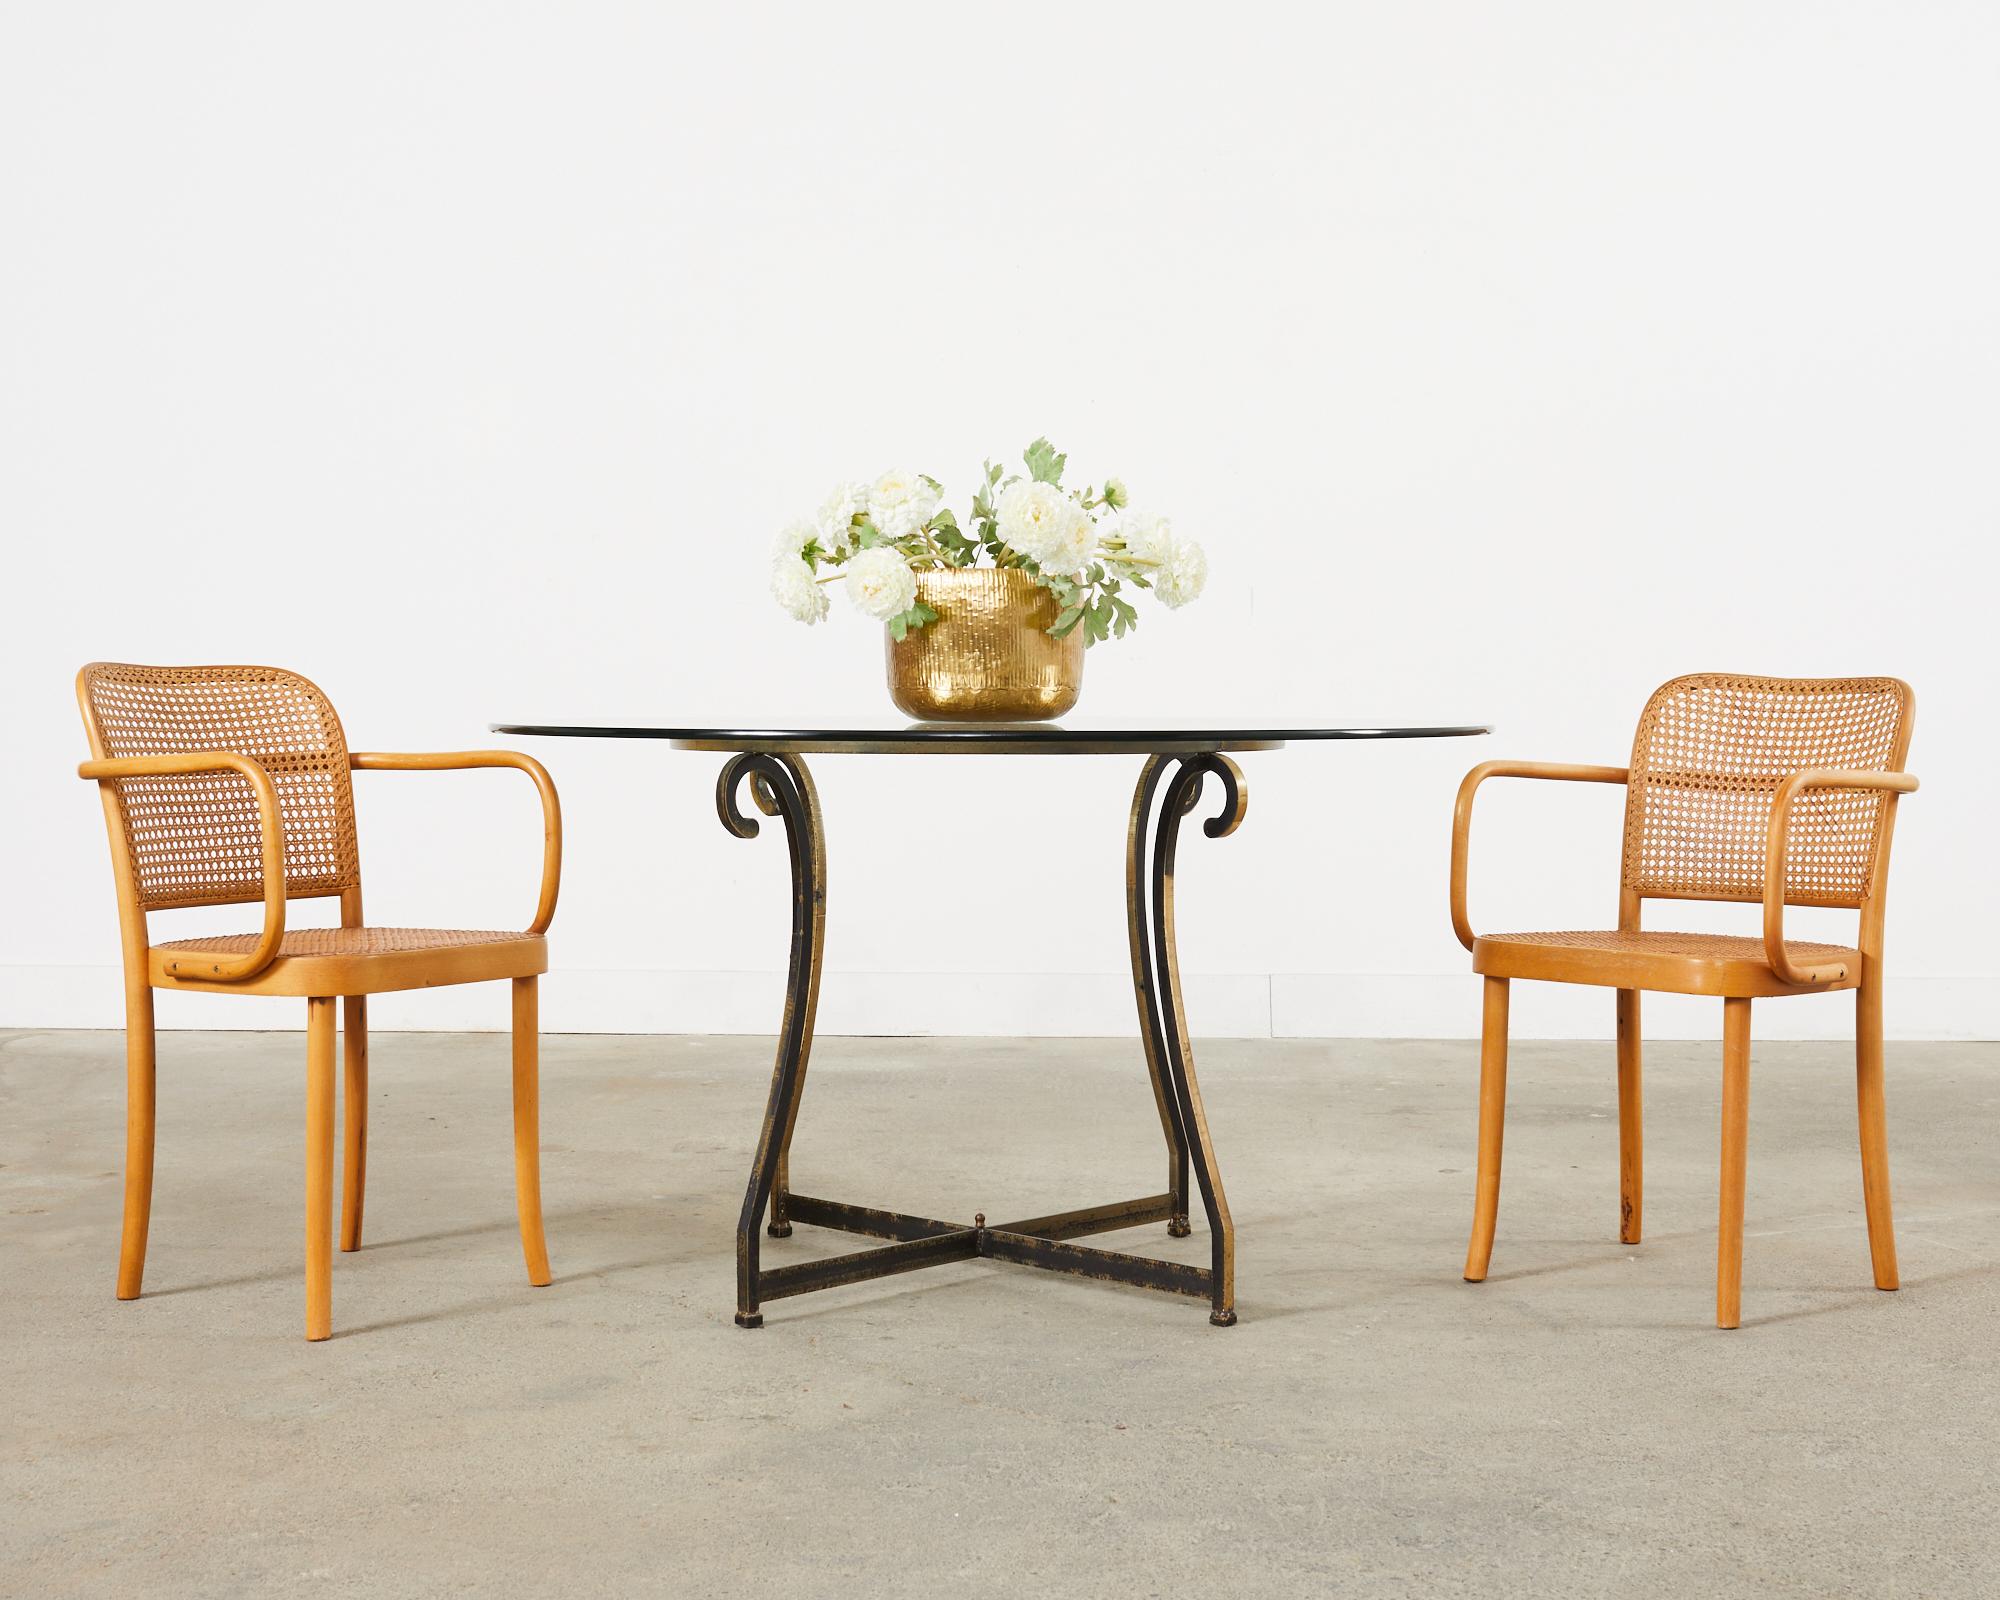 Seltenes Paar Thonet-Stühle Nr. 811 oder Prager Stühle, entworfen von Josef Hoffman. Die Stühle haben ein ikonisches Bugholzgestell mit quadratisch geformten Armlehnen und einem Sitz und einer Rückenlehne aus Rohr. Ausgezeichnete Tischlerei und